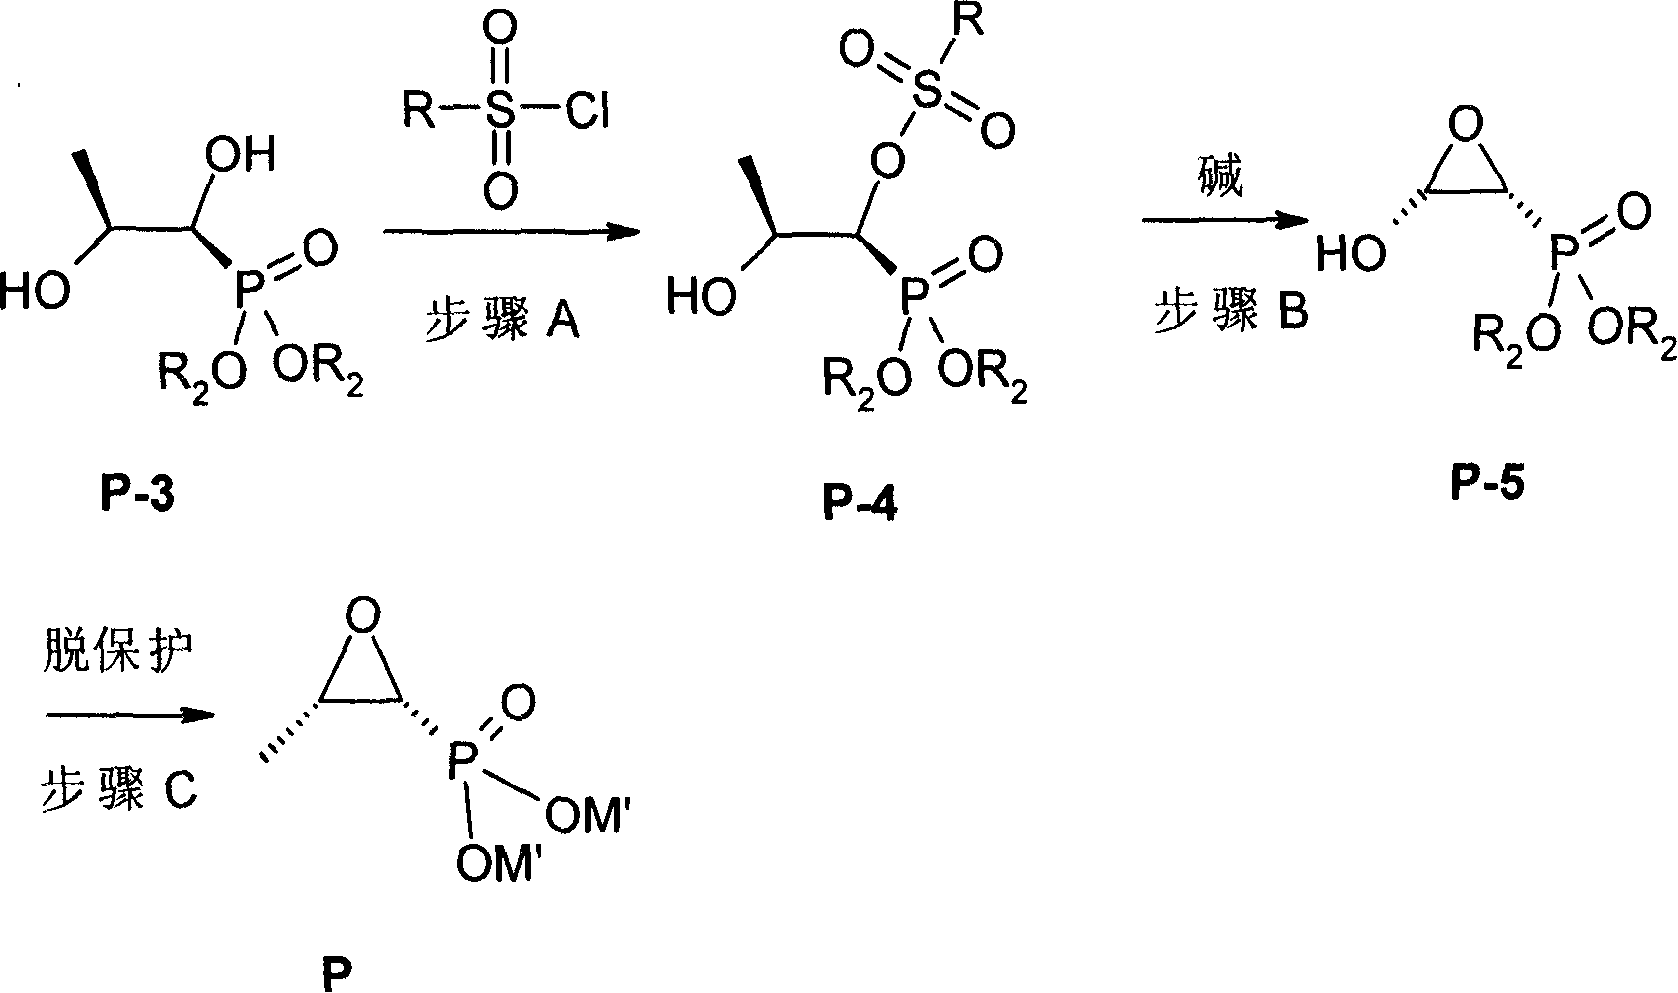 Synthesis for producing levo phosphomycin by dextro phosphomycin